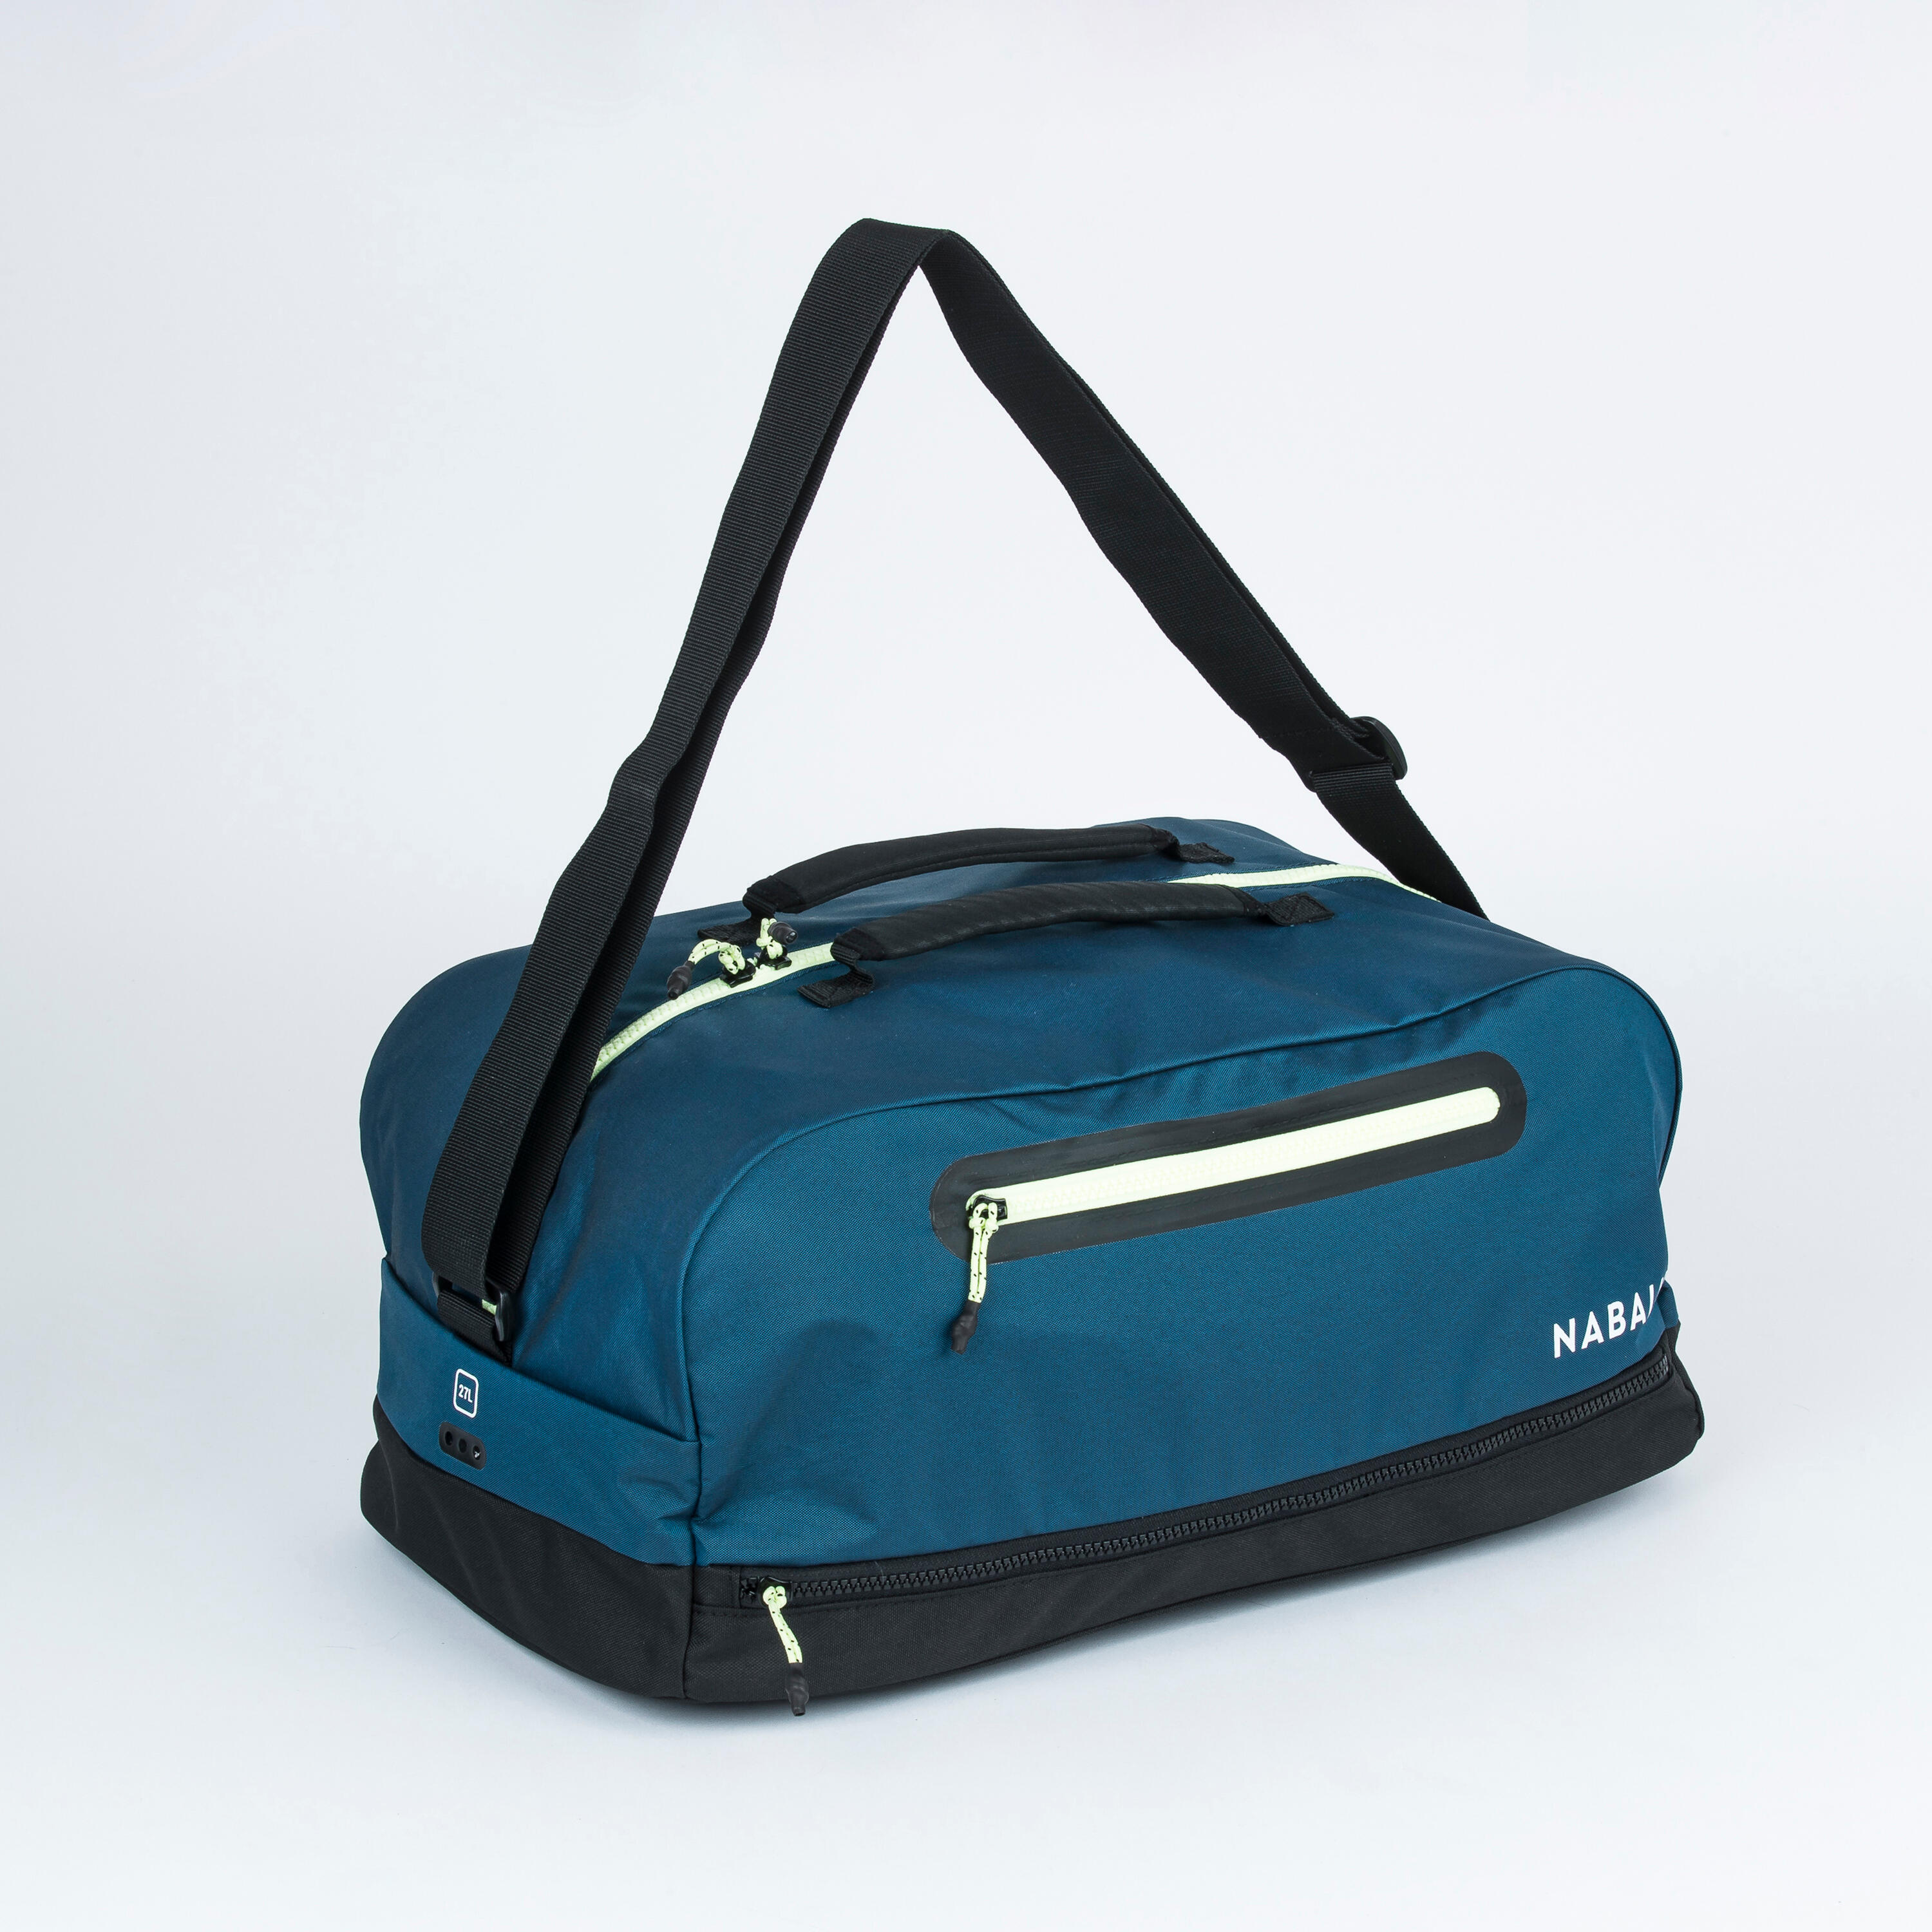 Nike Brasilia 9.5 Training Duffel Bag (Medium, 60L) Iron Grey / Black